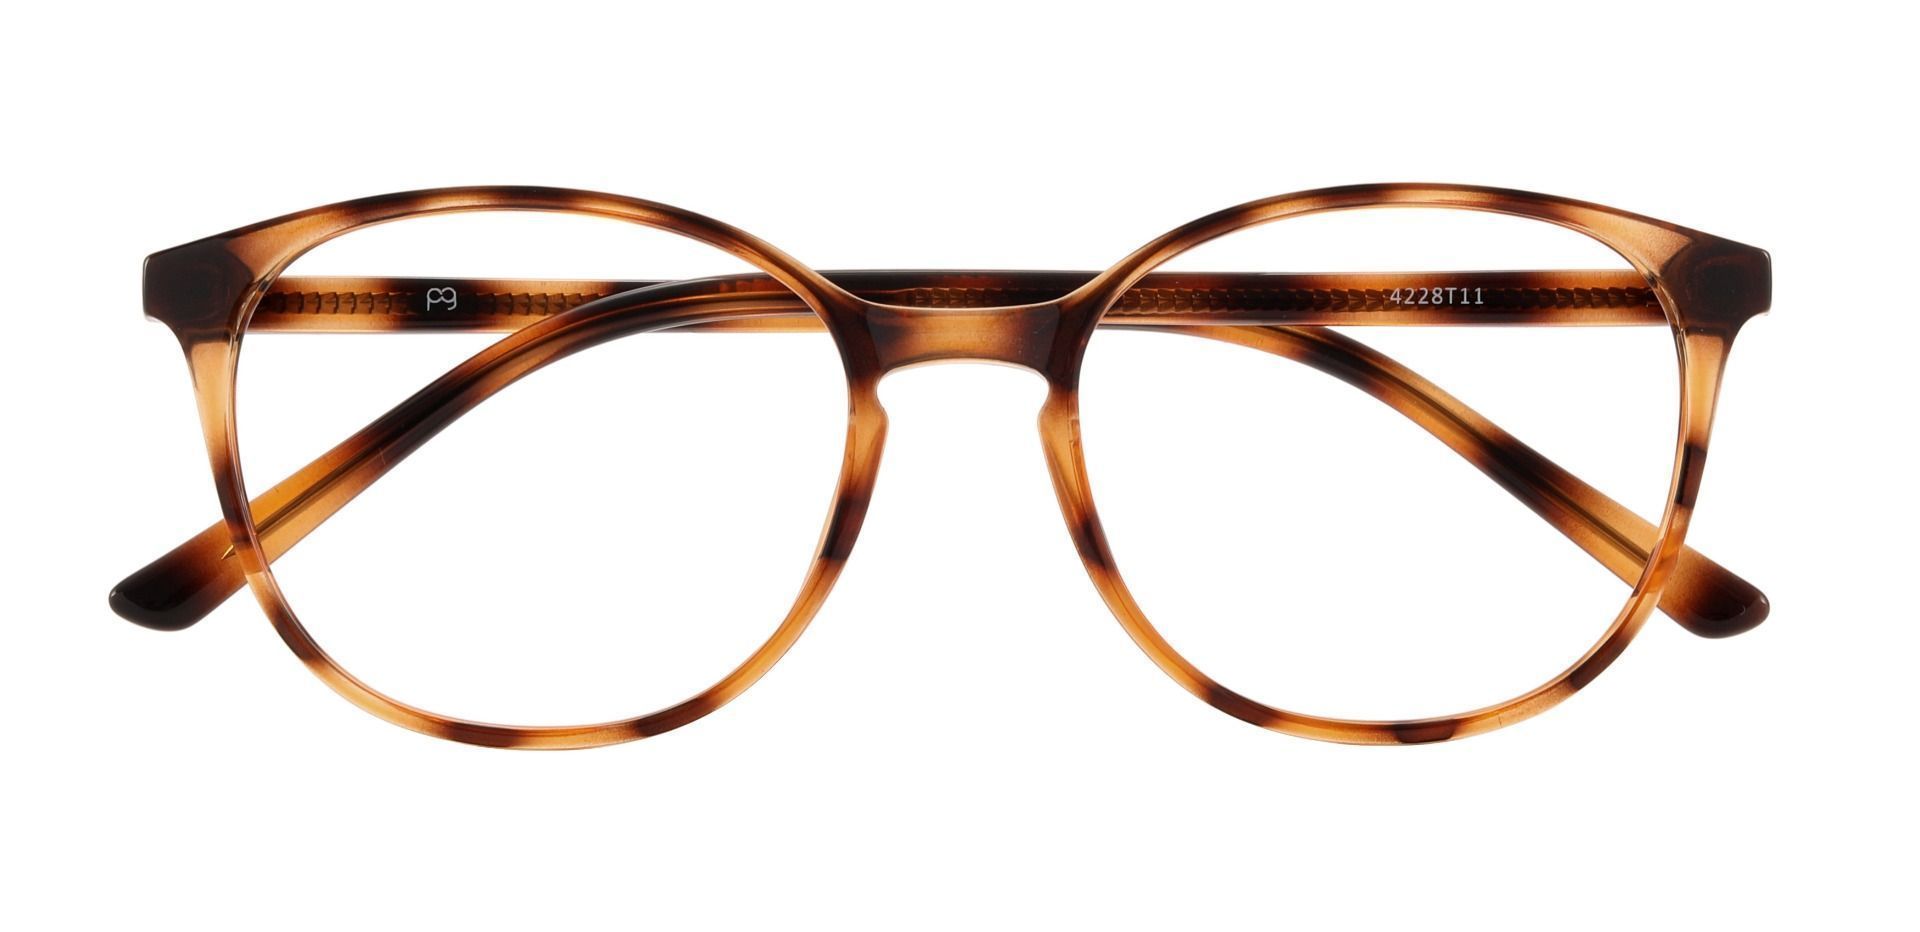 Shanley Oval Progressive Glasses - Tortoise